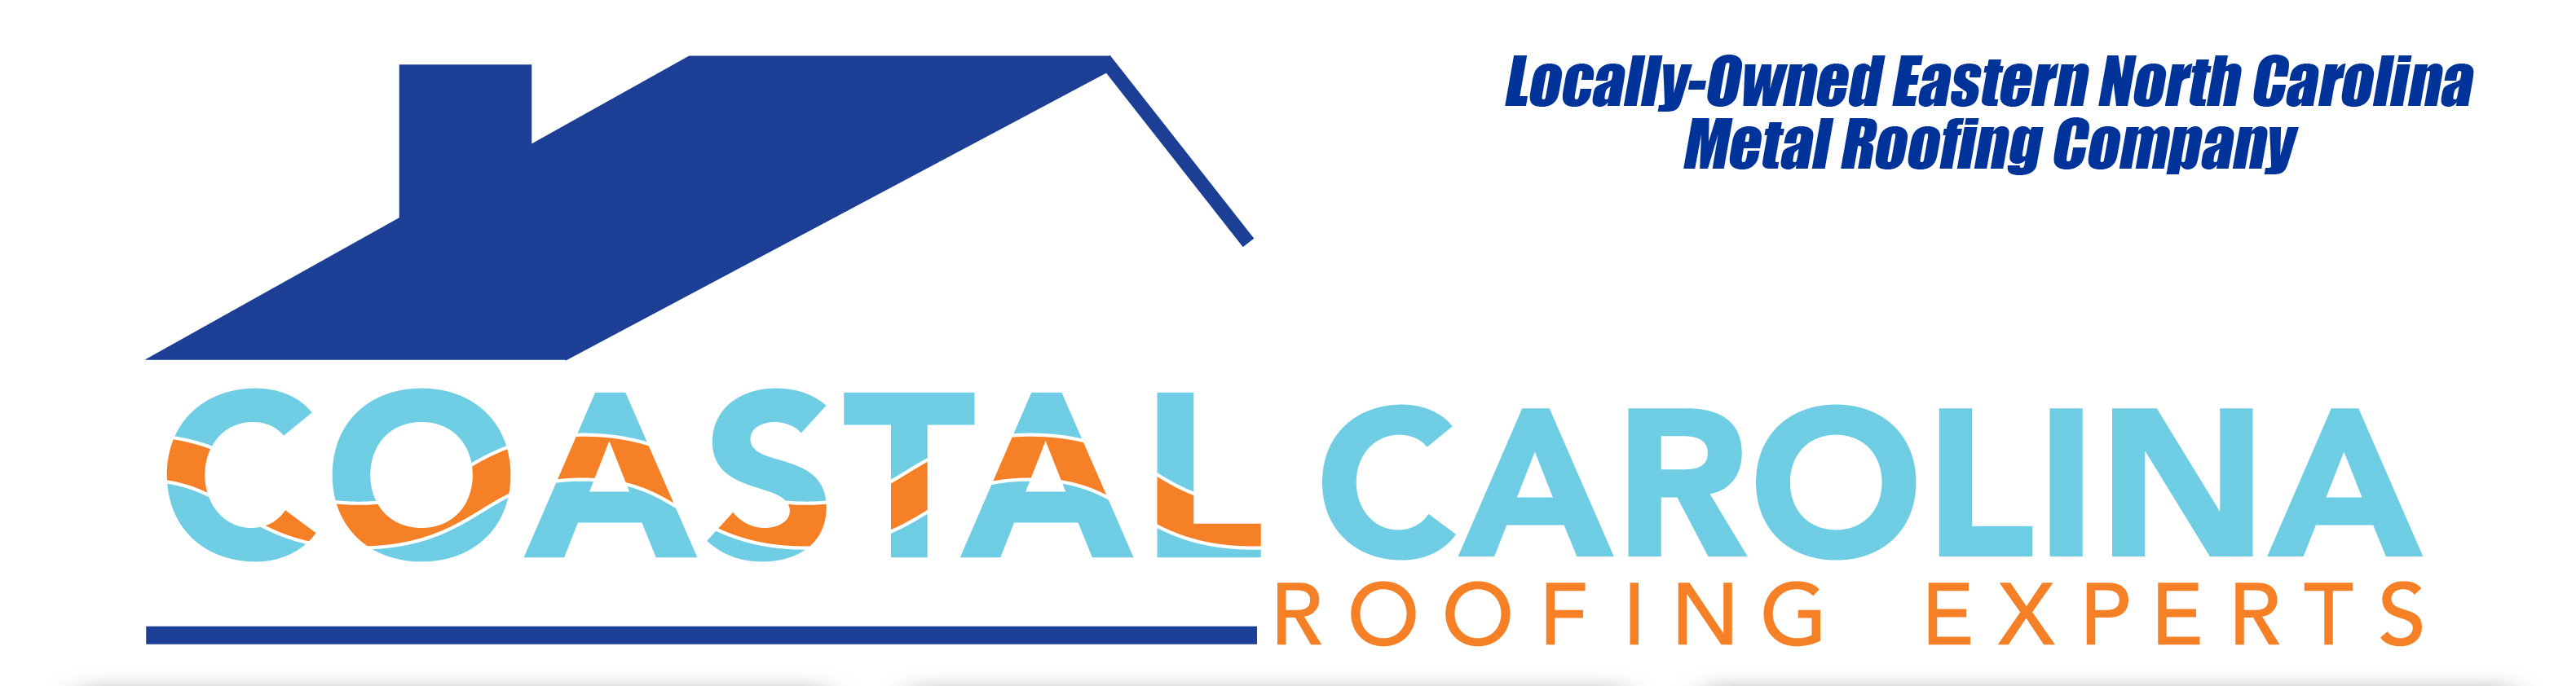 Coastal Carolina Roofing Experts, Inc. Logo